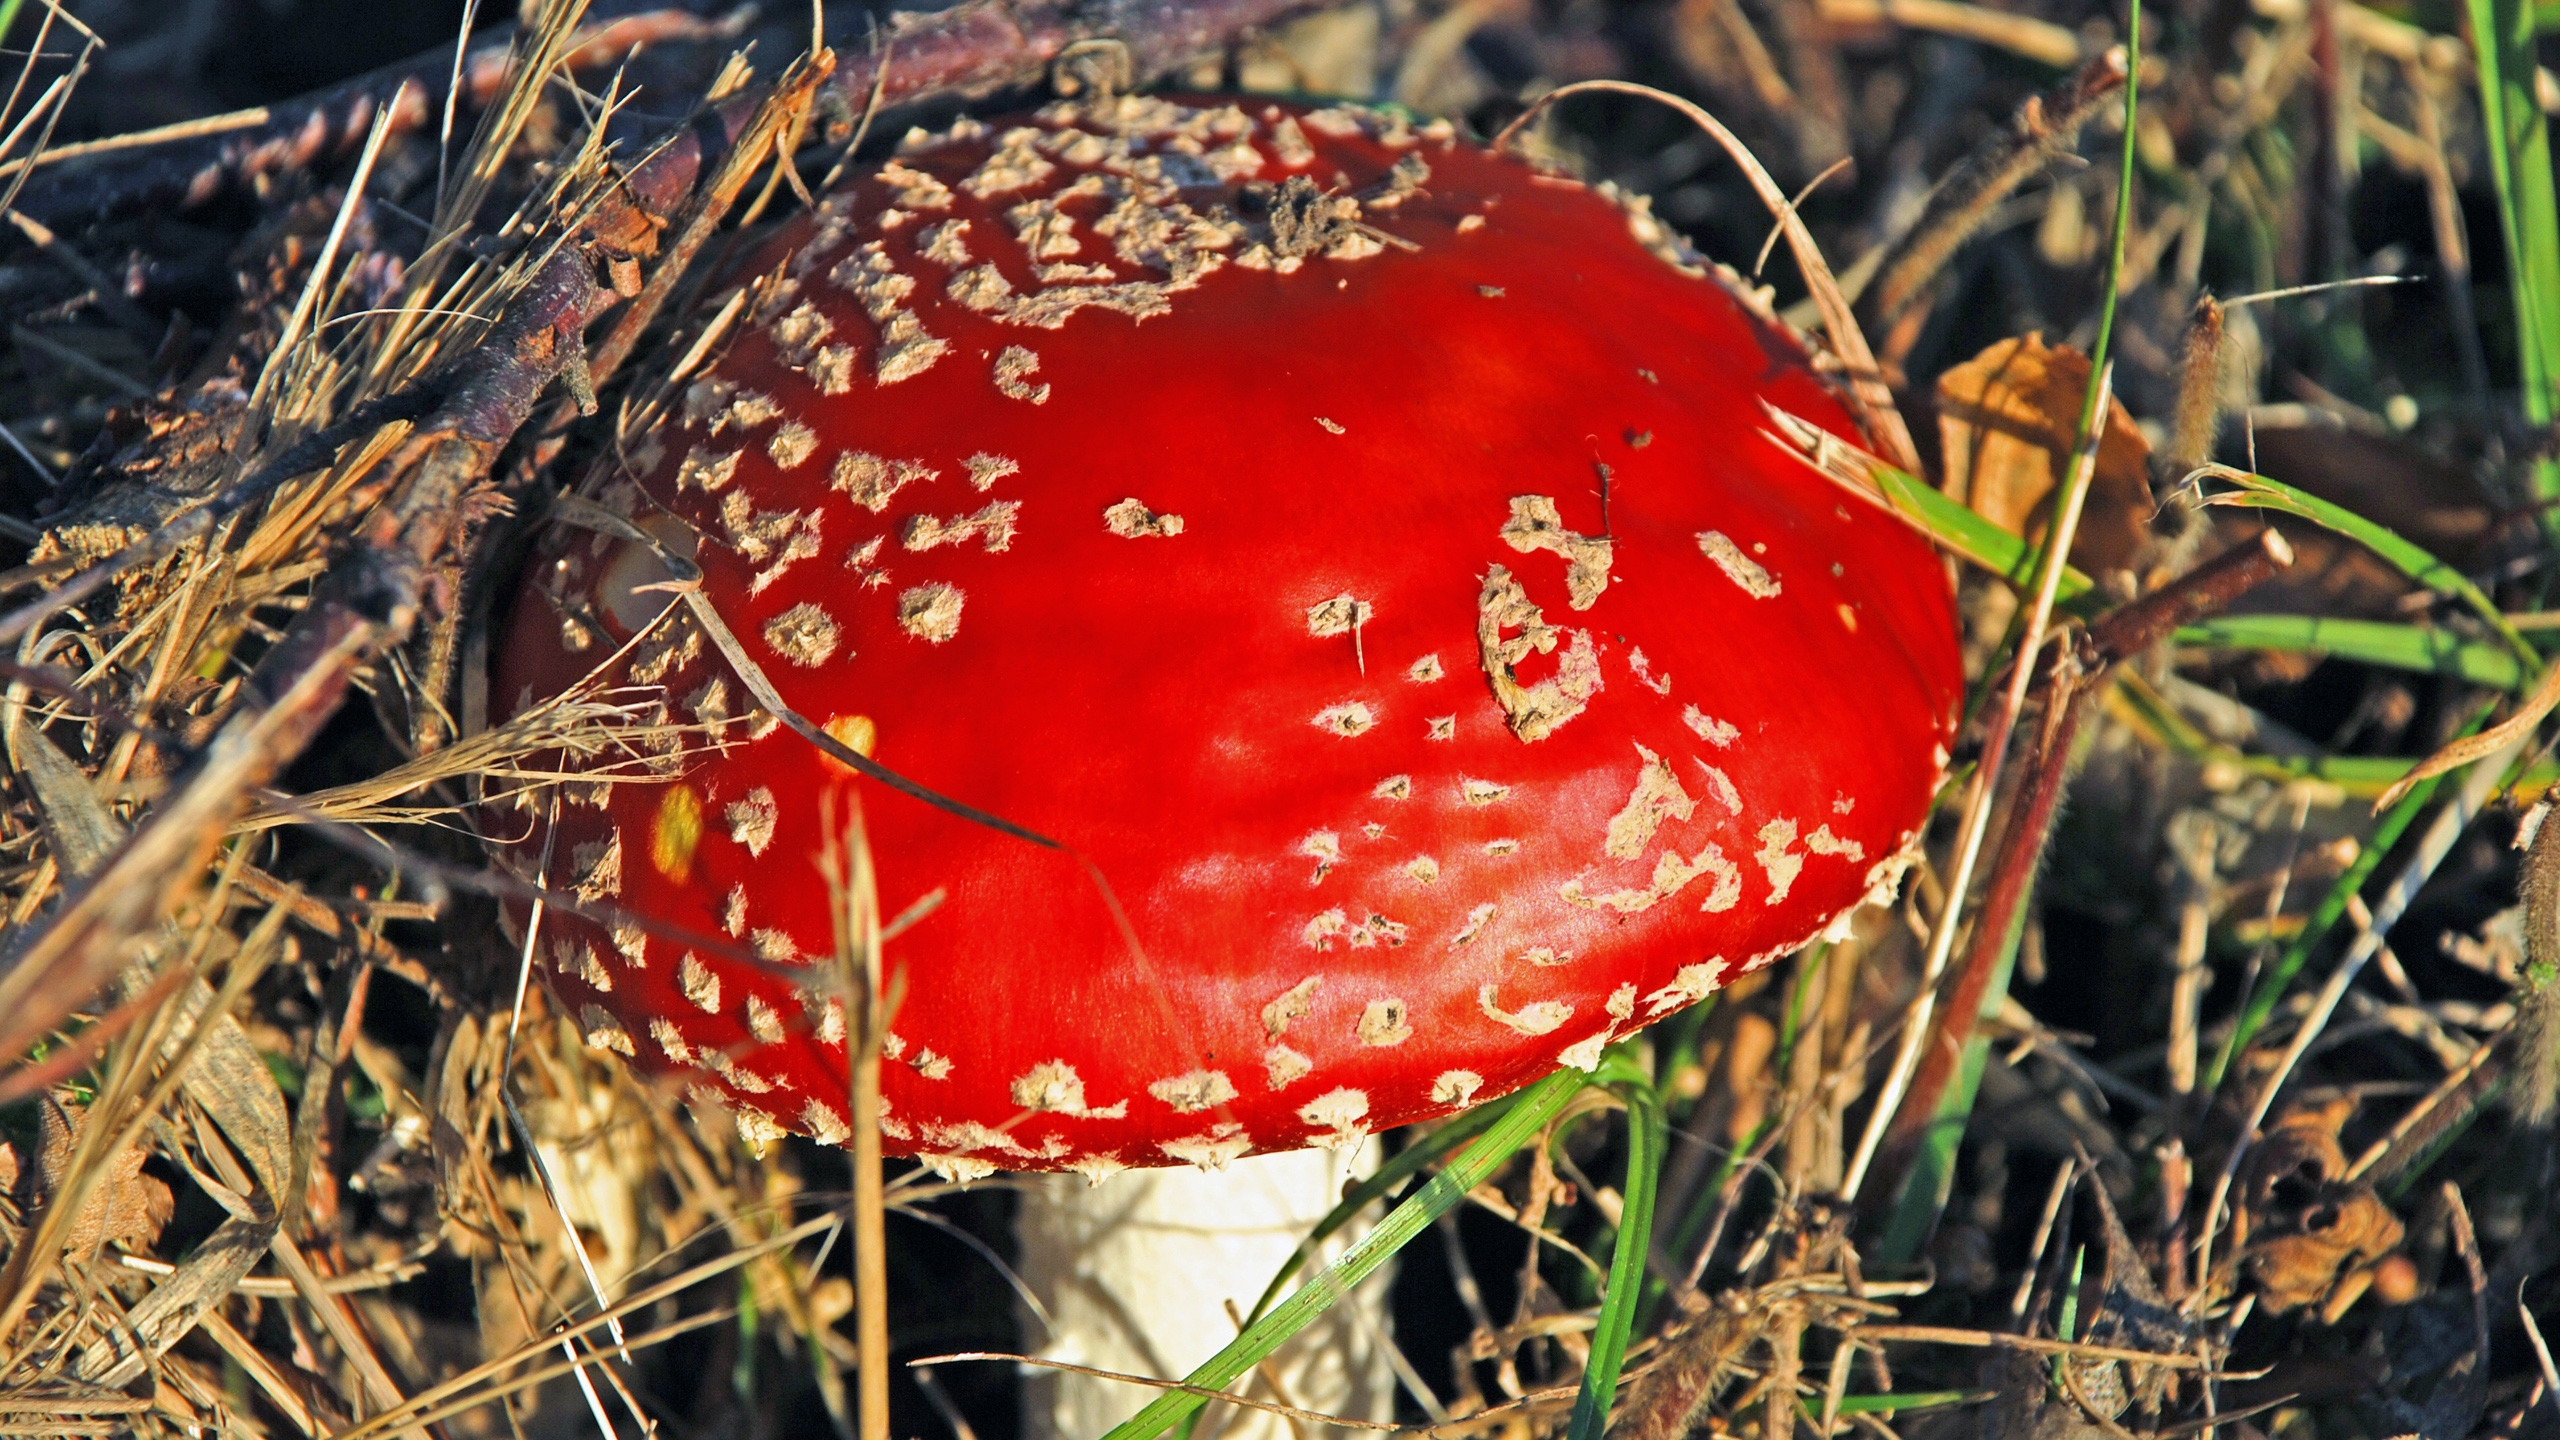 Red Mushroom for 2560x1440 HDTV resolution